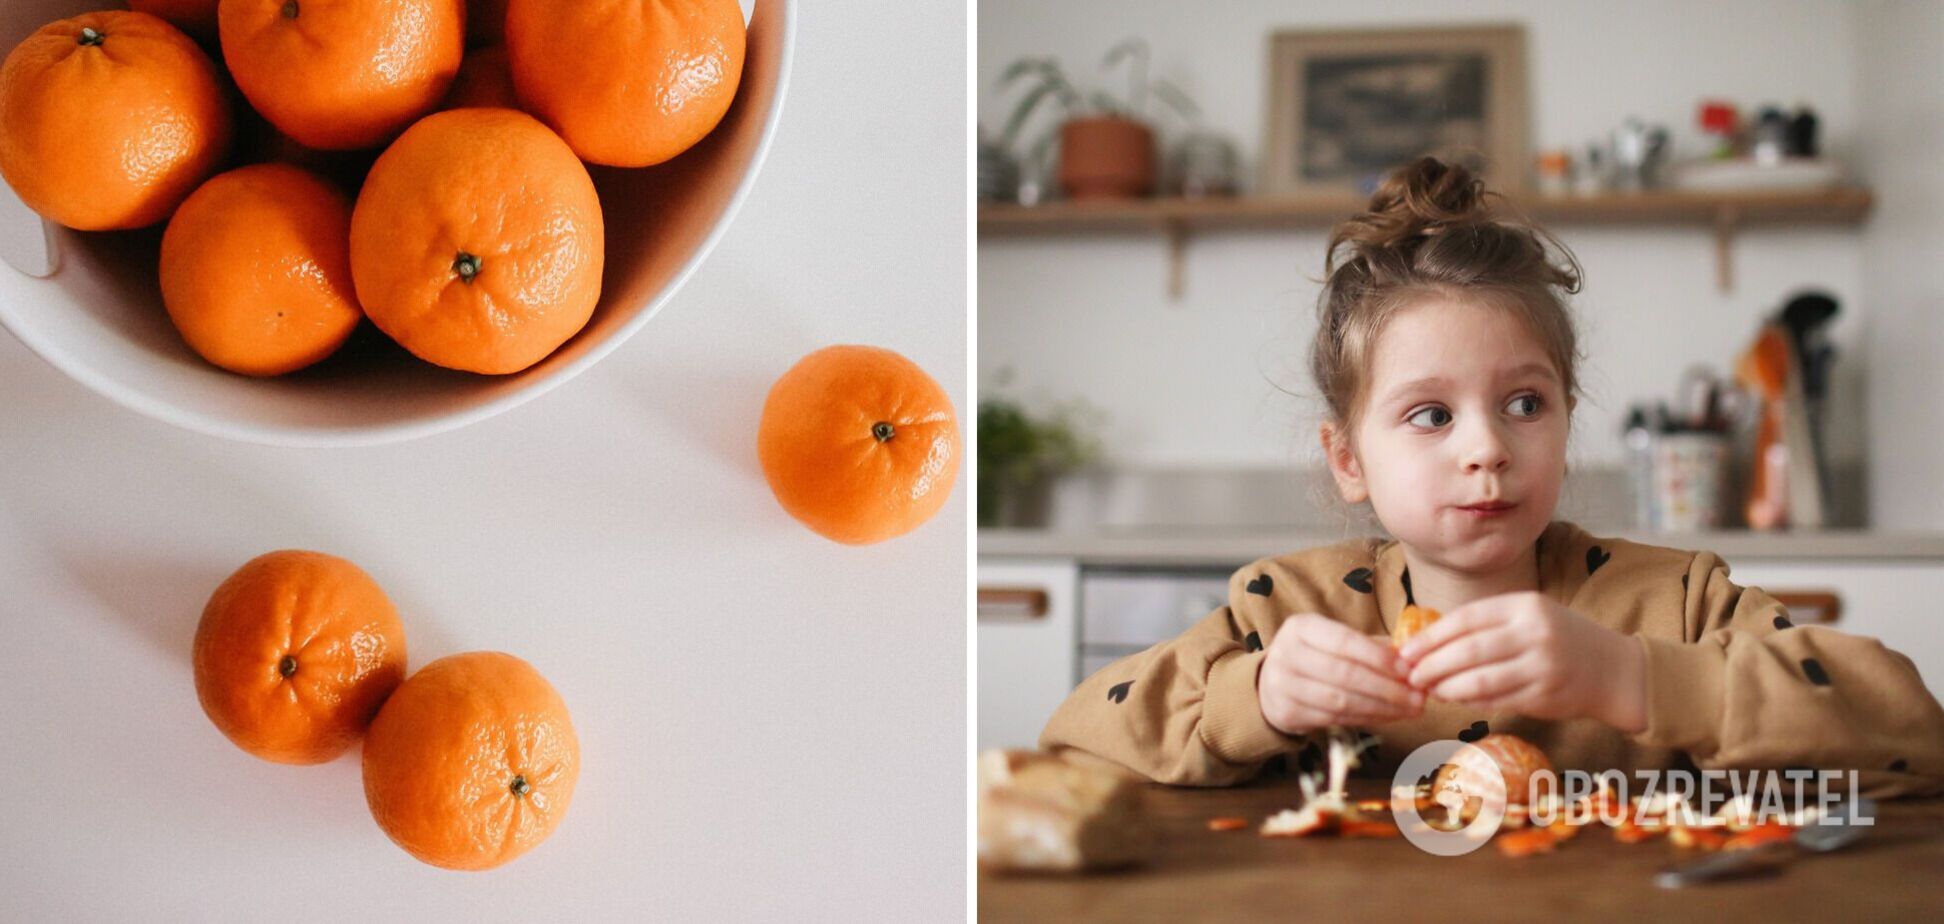 Скільки мандаринів можна з'їдати дітям за один раз: відповідає експертка